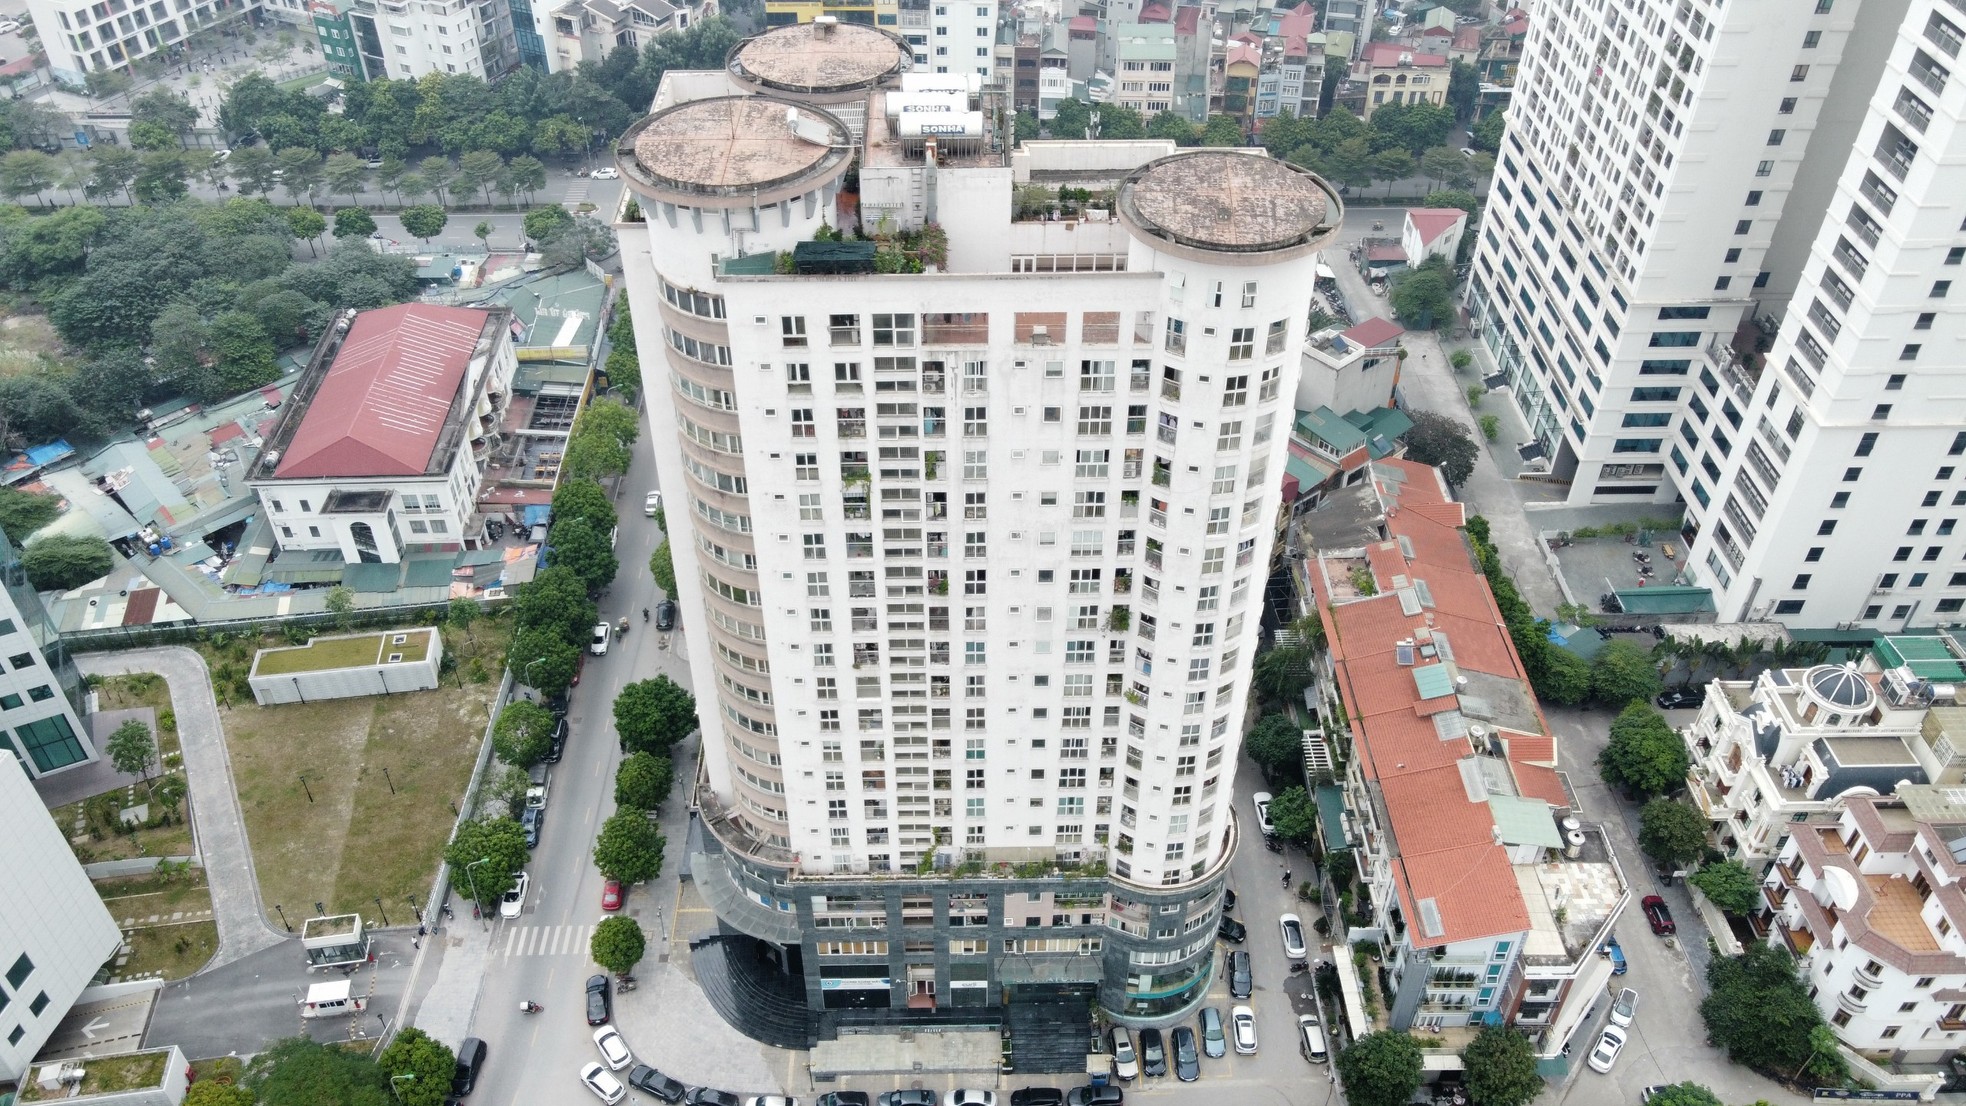 Hà Nội lên tiếng việc chậm xử lý chung cư biến tầng kỹ thuật thành căn hộ và văn phòng - Ảnh 2.